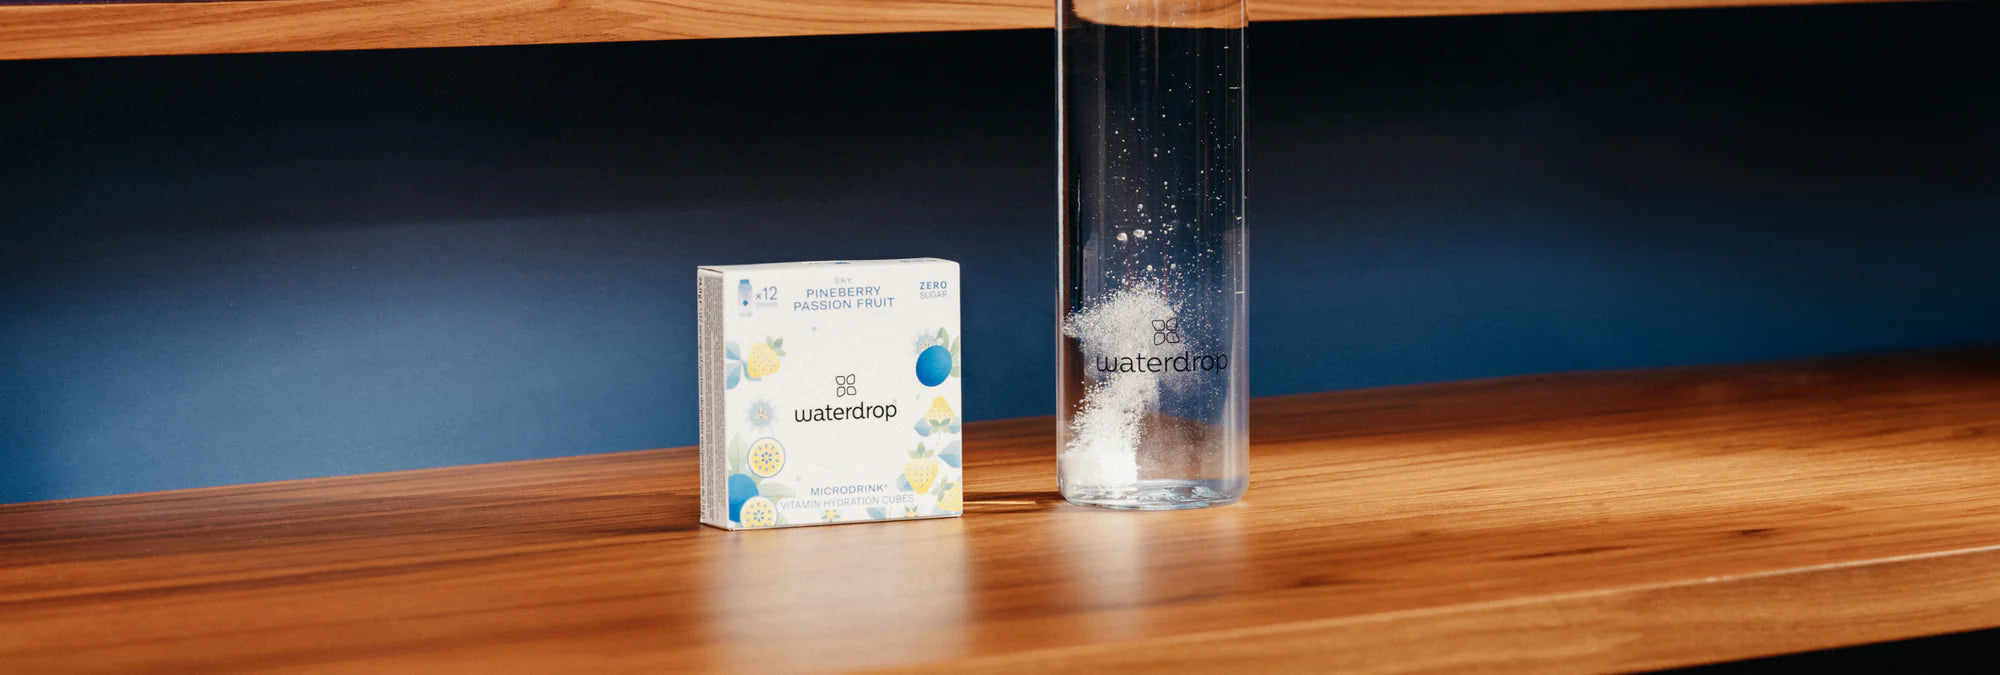 waterdrop - Unsere beliebte Flasche in der RELAX Edition ist seit